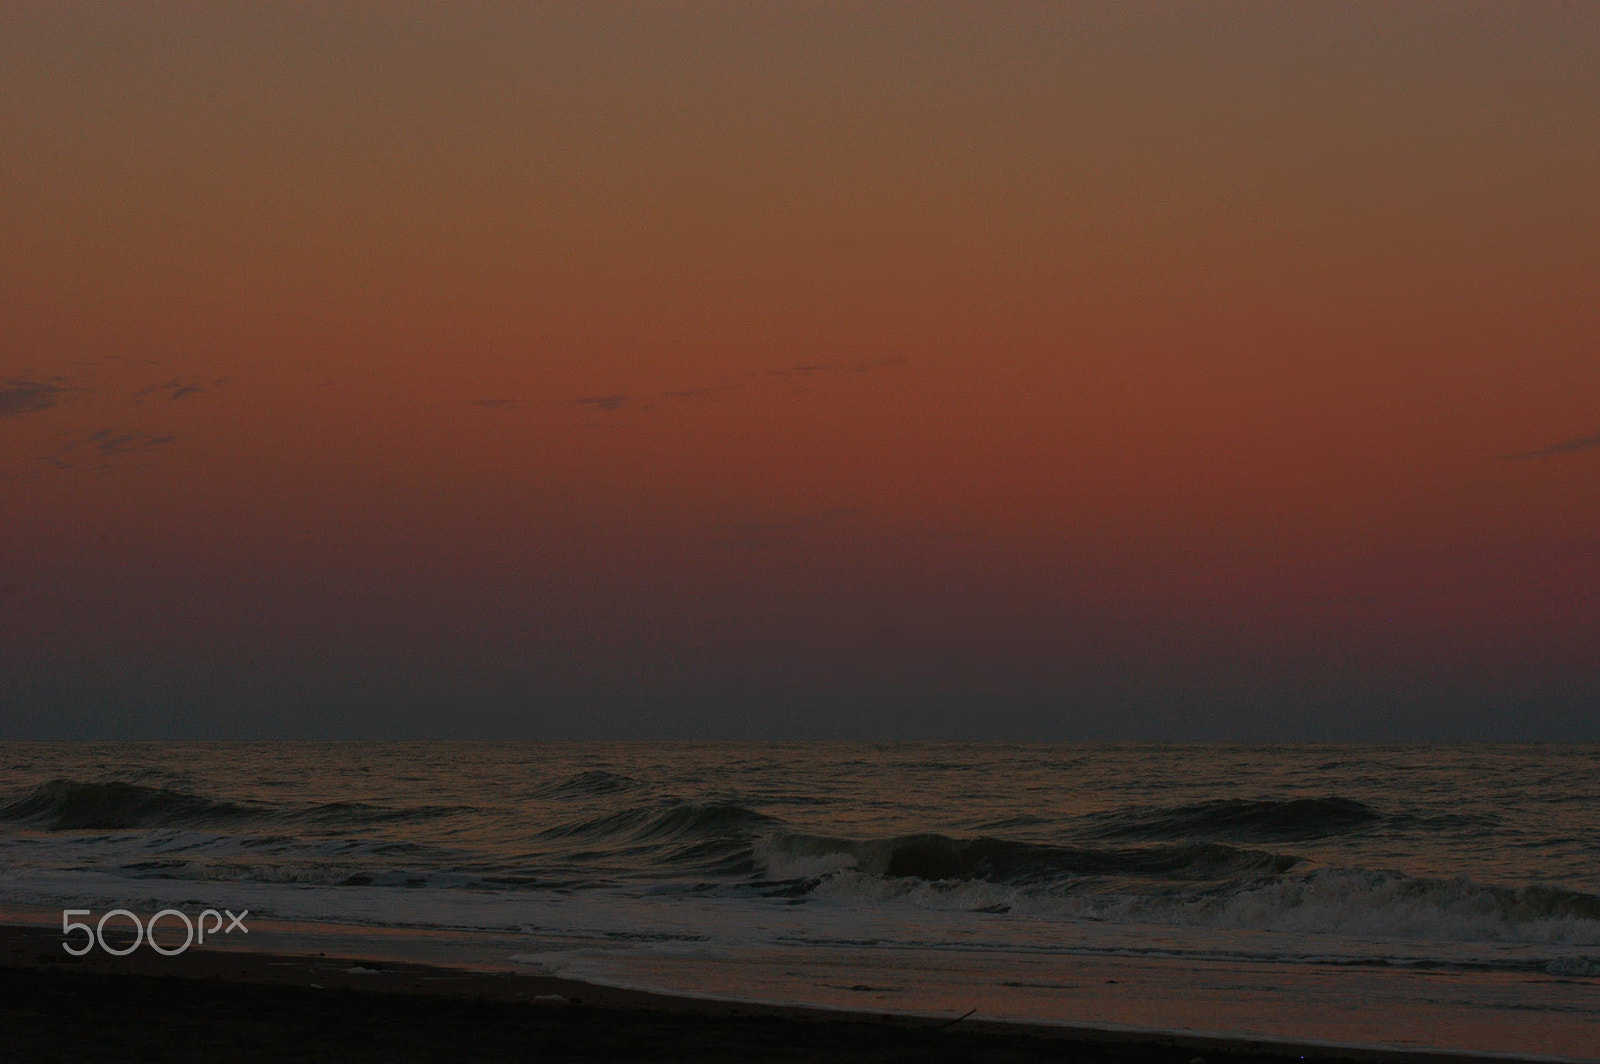 Nikon D100 sample photo. Cómo estás sin ver el mar? ♫ photography